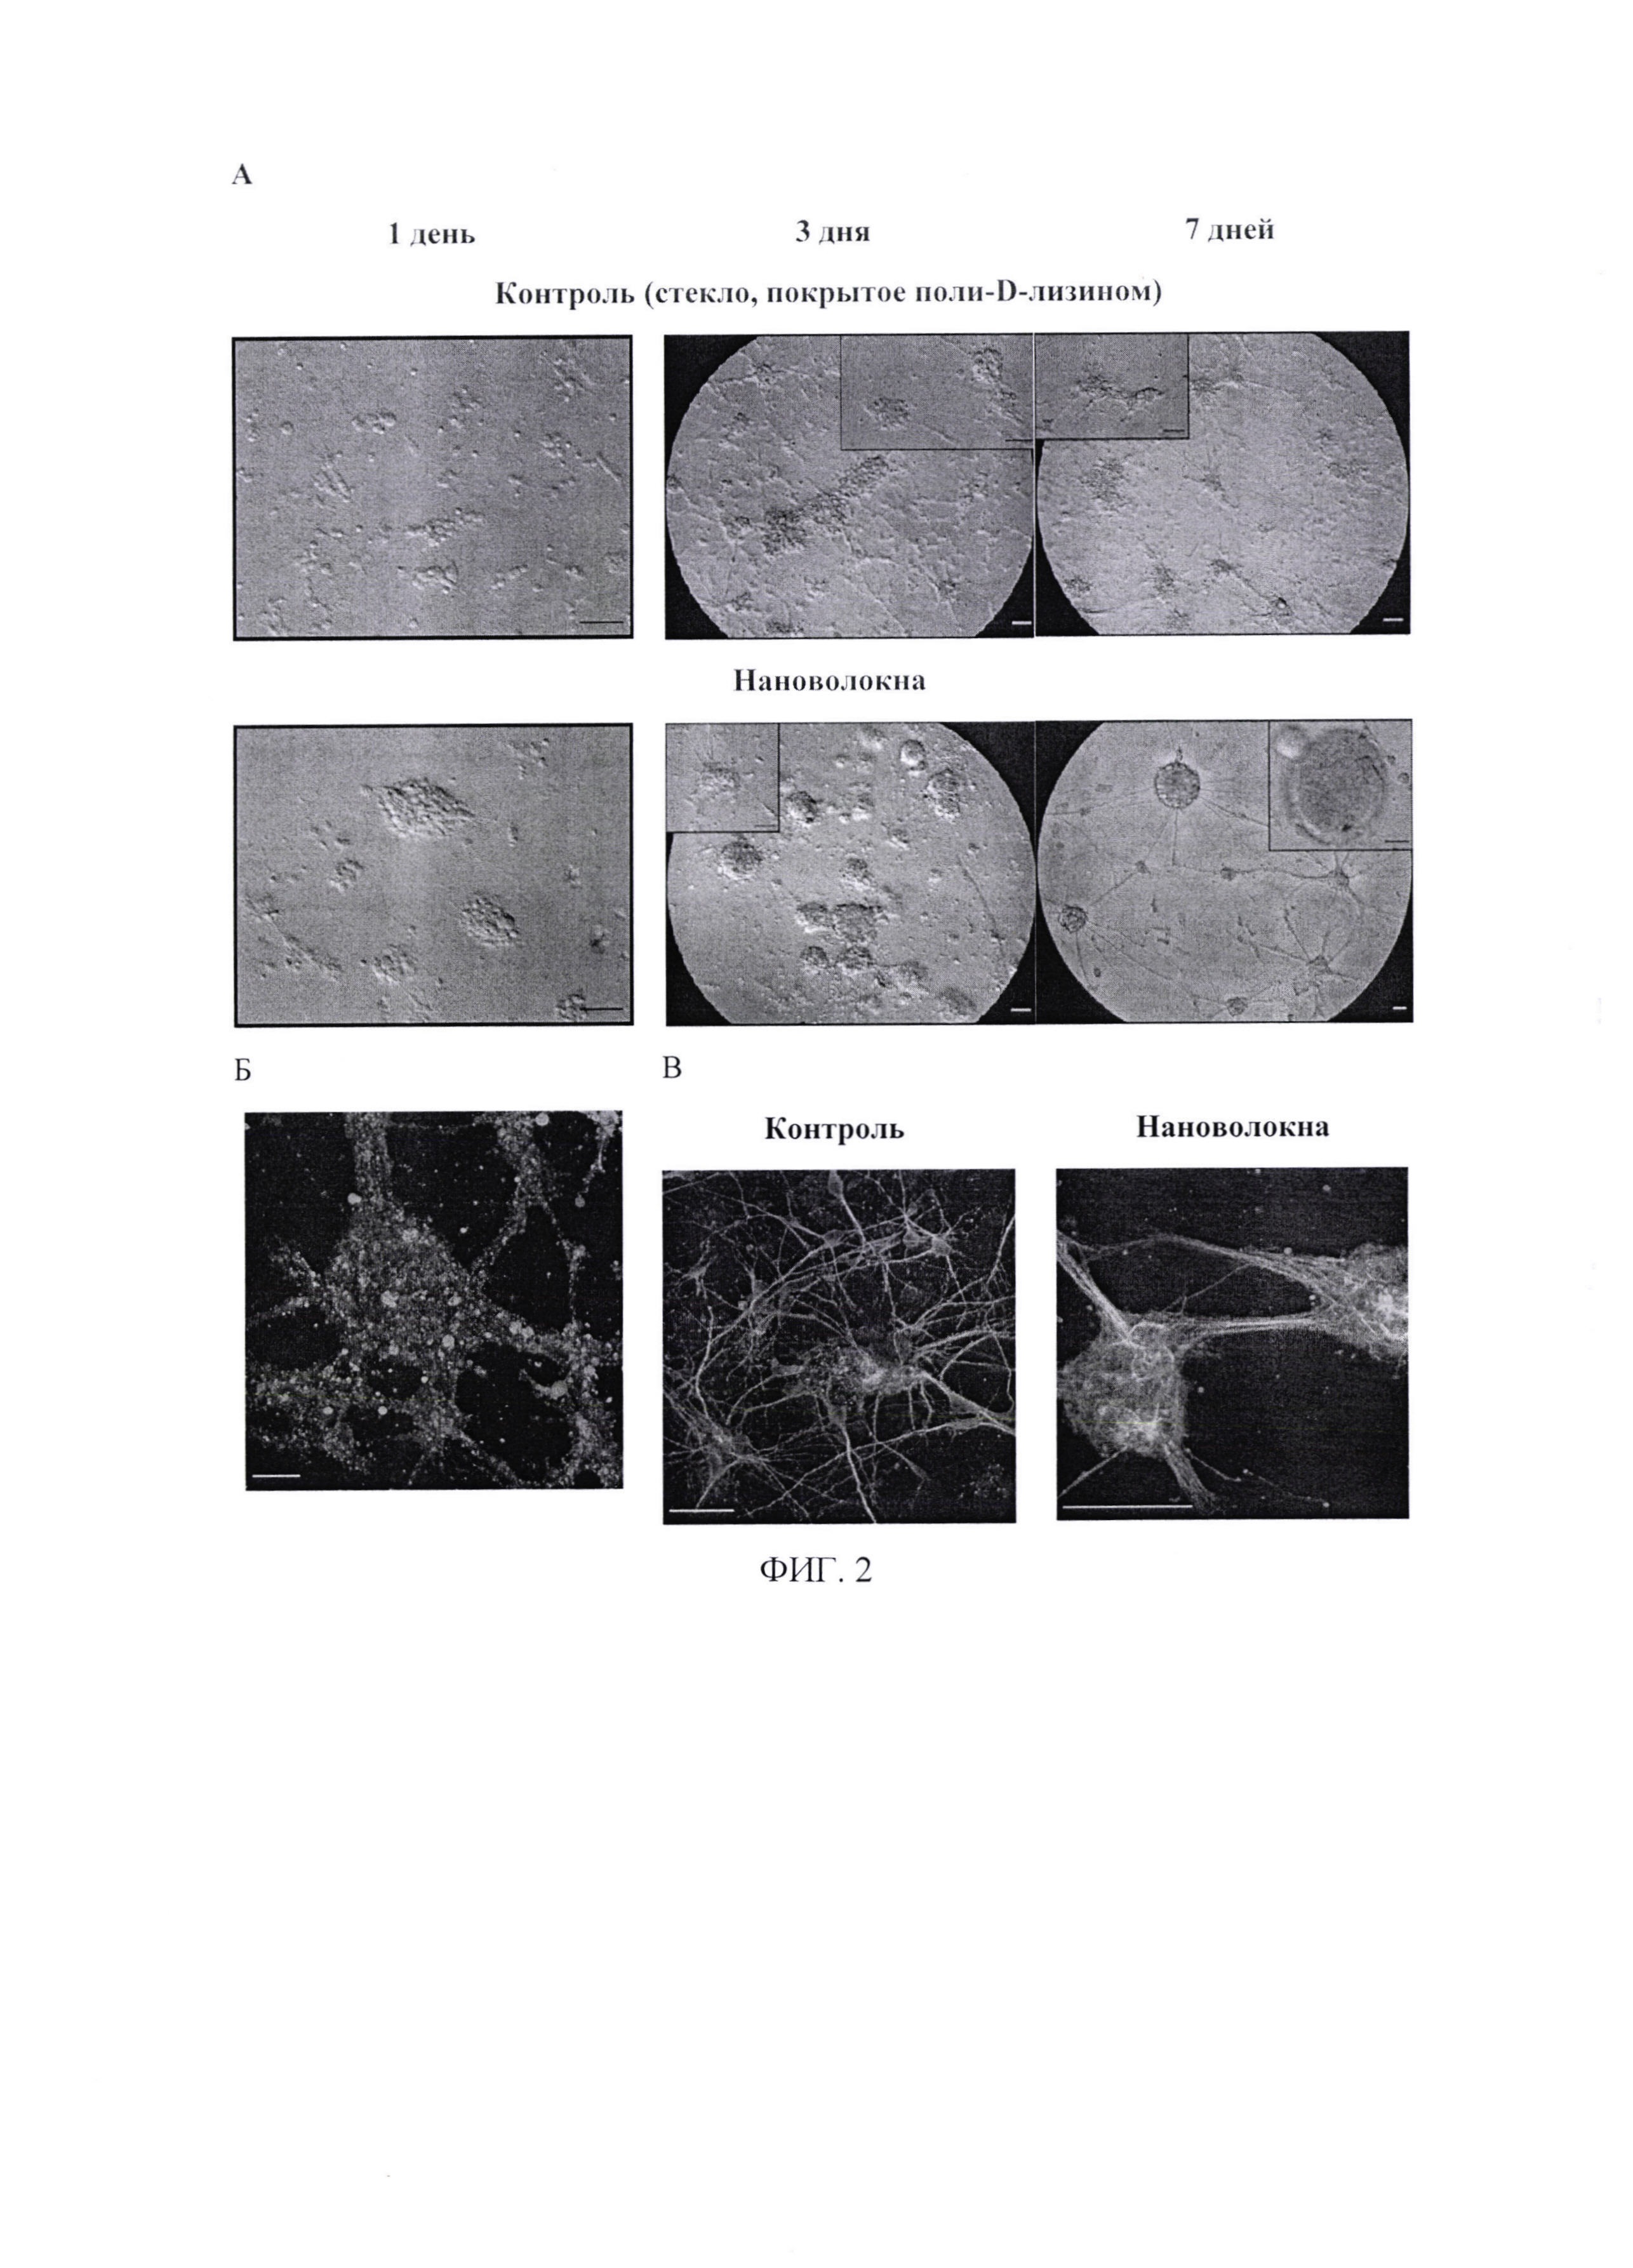 Способ получения органоидов мозга (нейросфер) на скаффолдах из высокоориентированных нановолокон